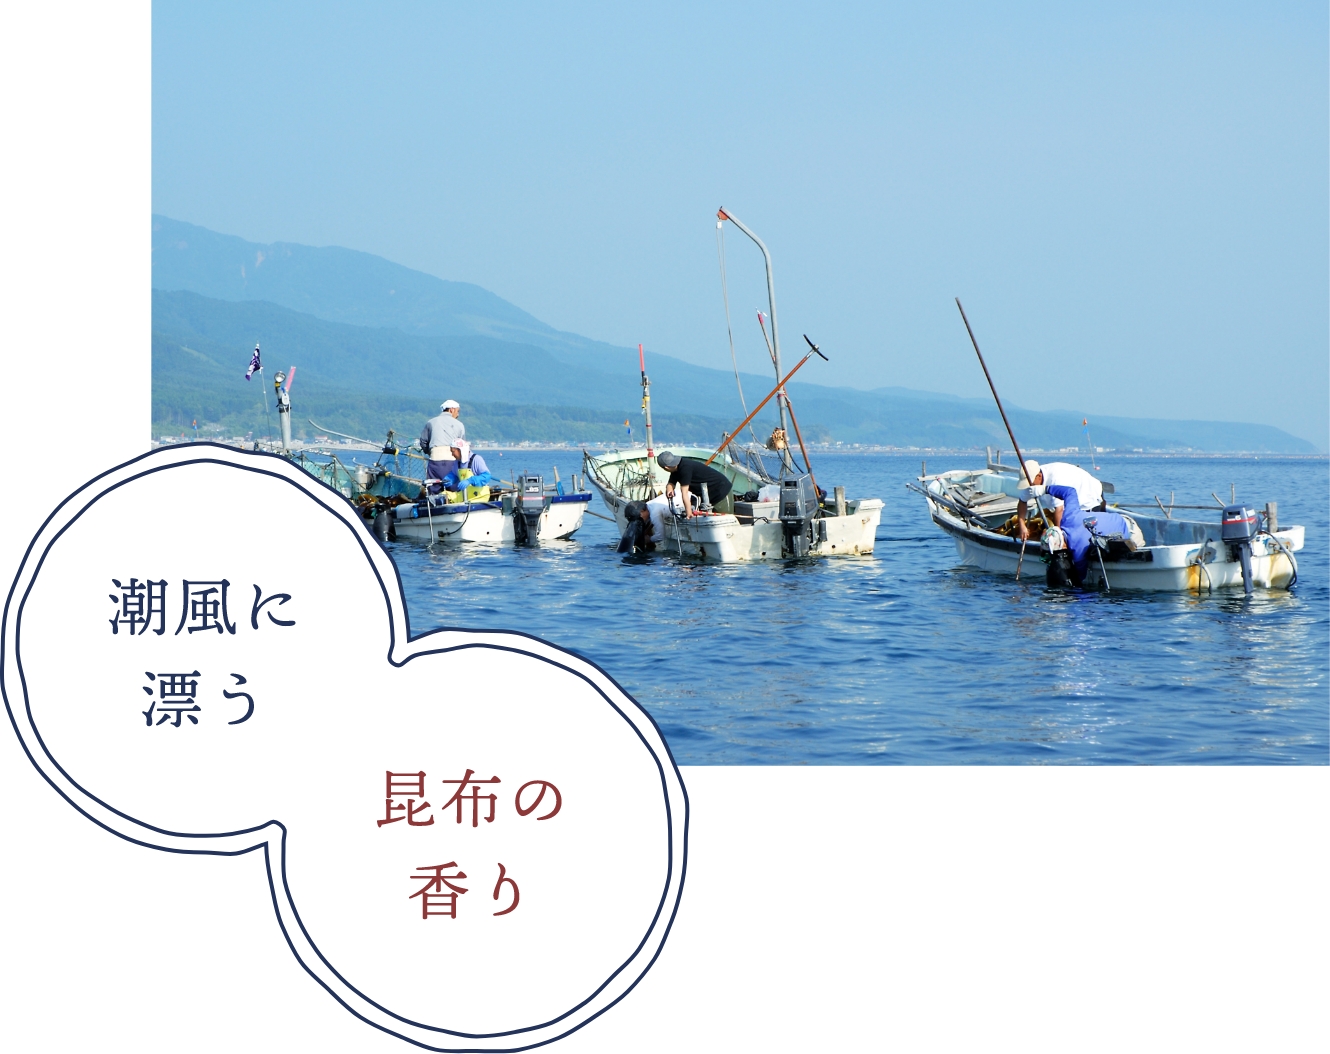 献上用昆布の産地として北海道で唯一選ばれた函館市・尾札部町。浜では毎年、真昆布・がごめ昆布が漁師さんに大切に育てられています。